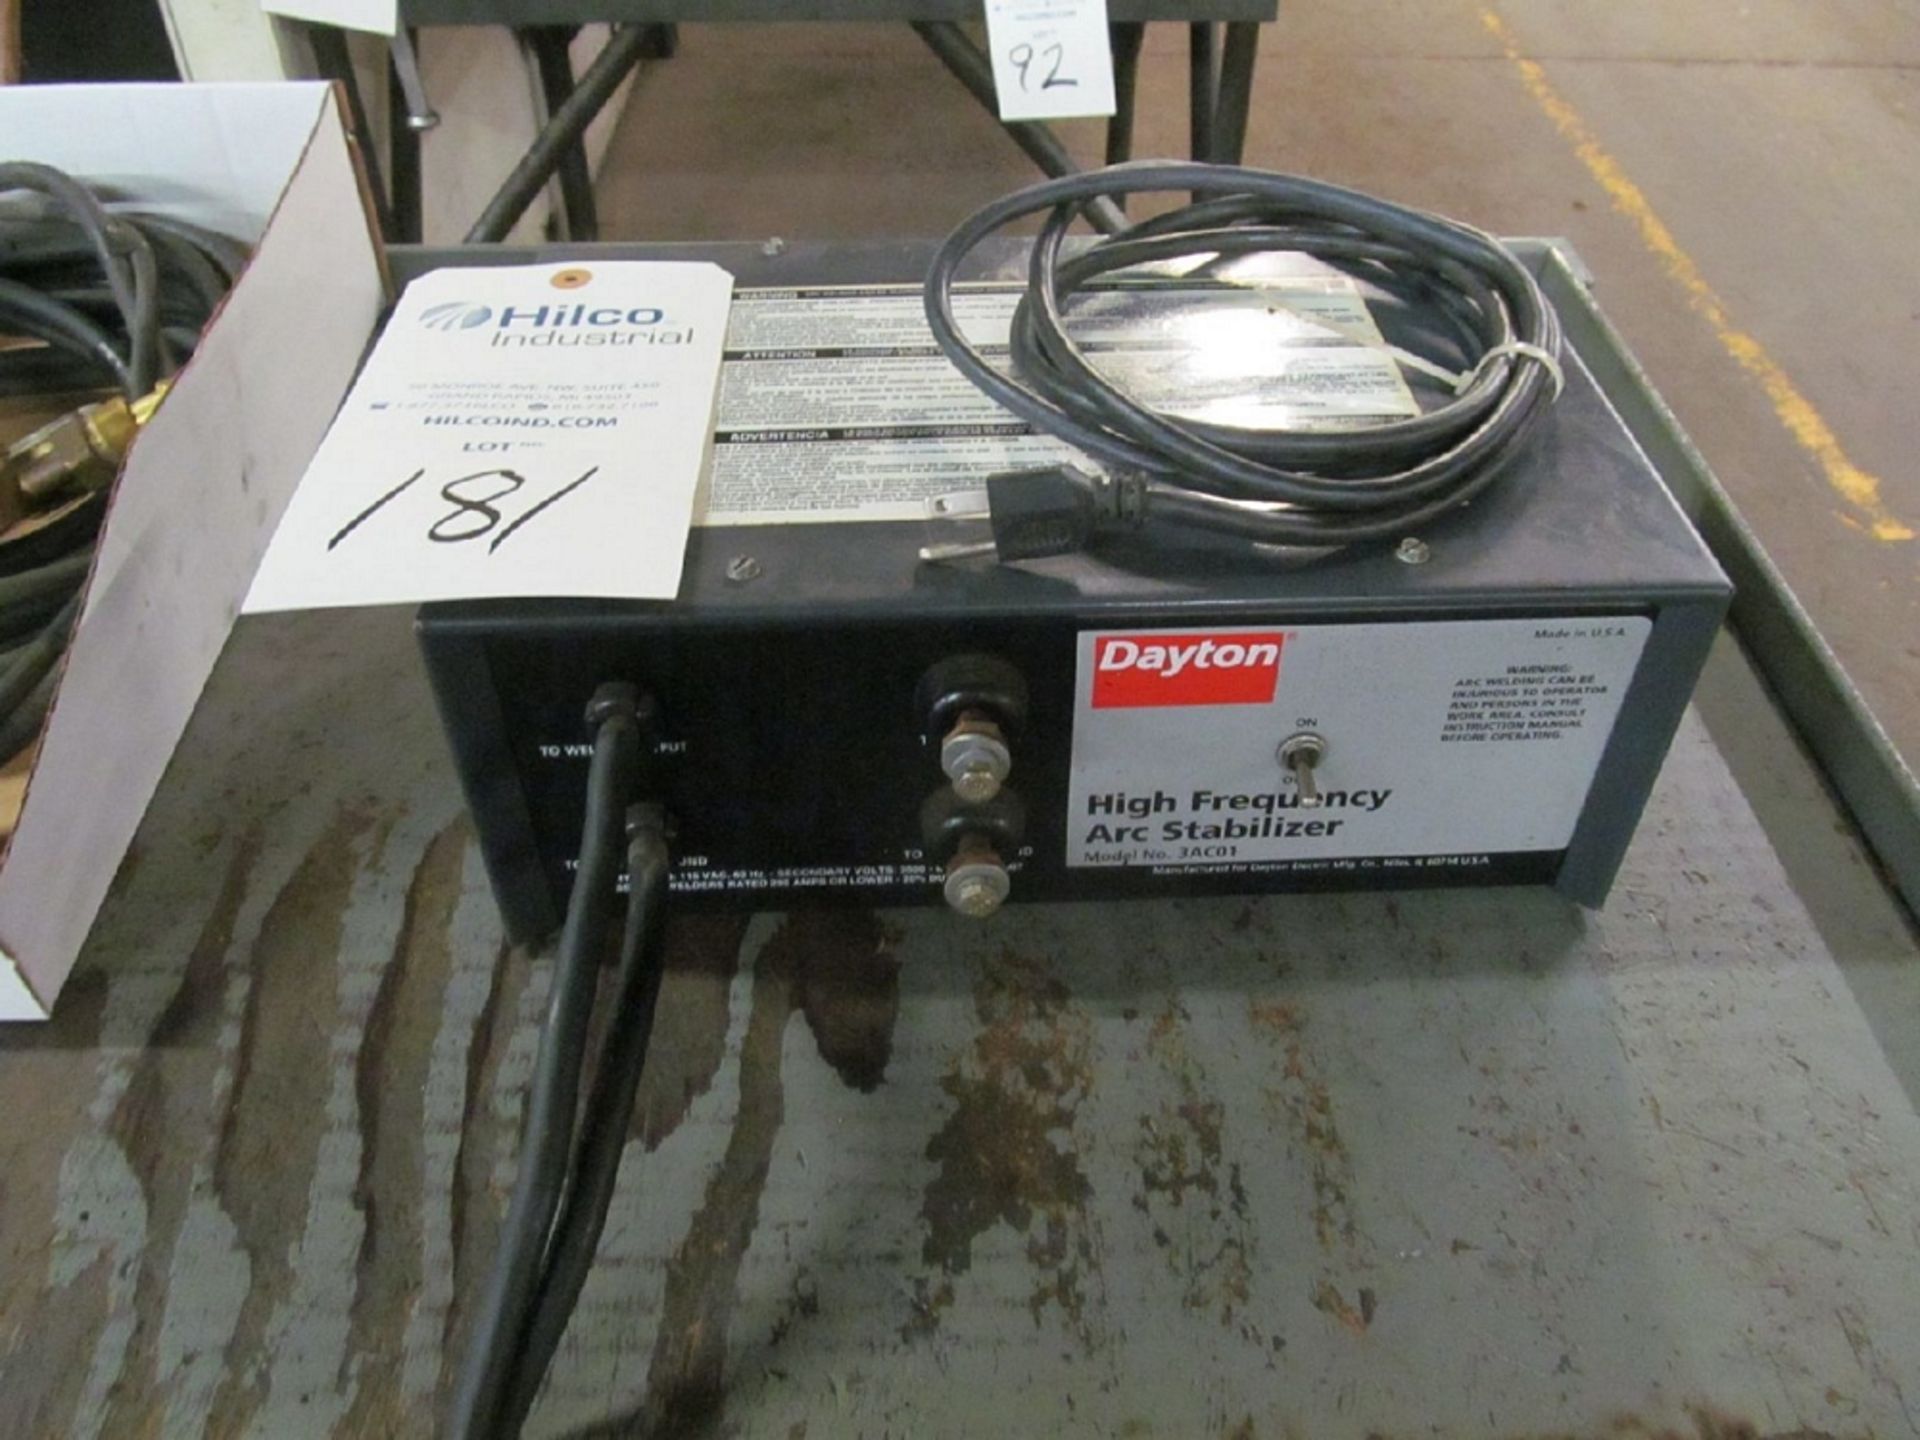 Dayton Model 3AC01 High Frequency Stabilizer